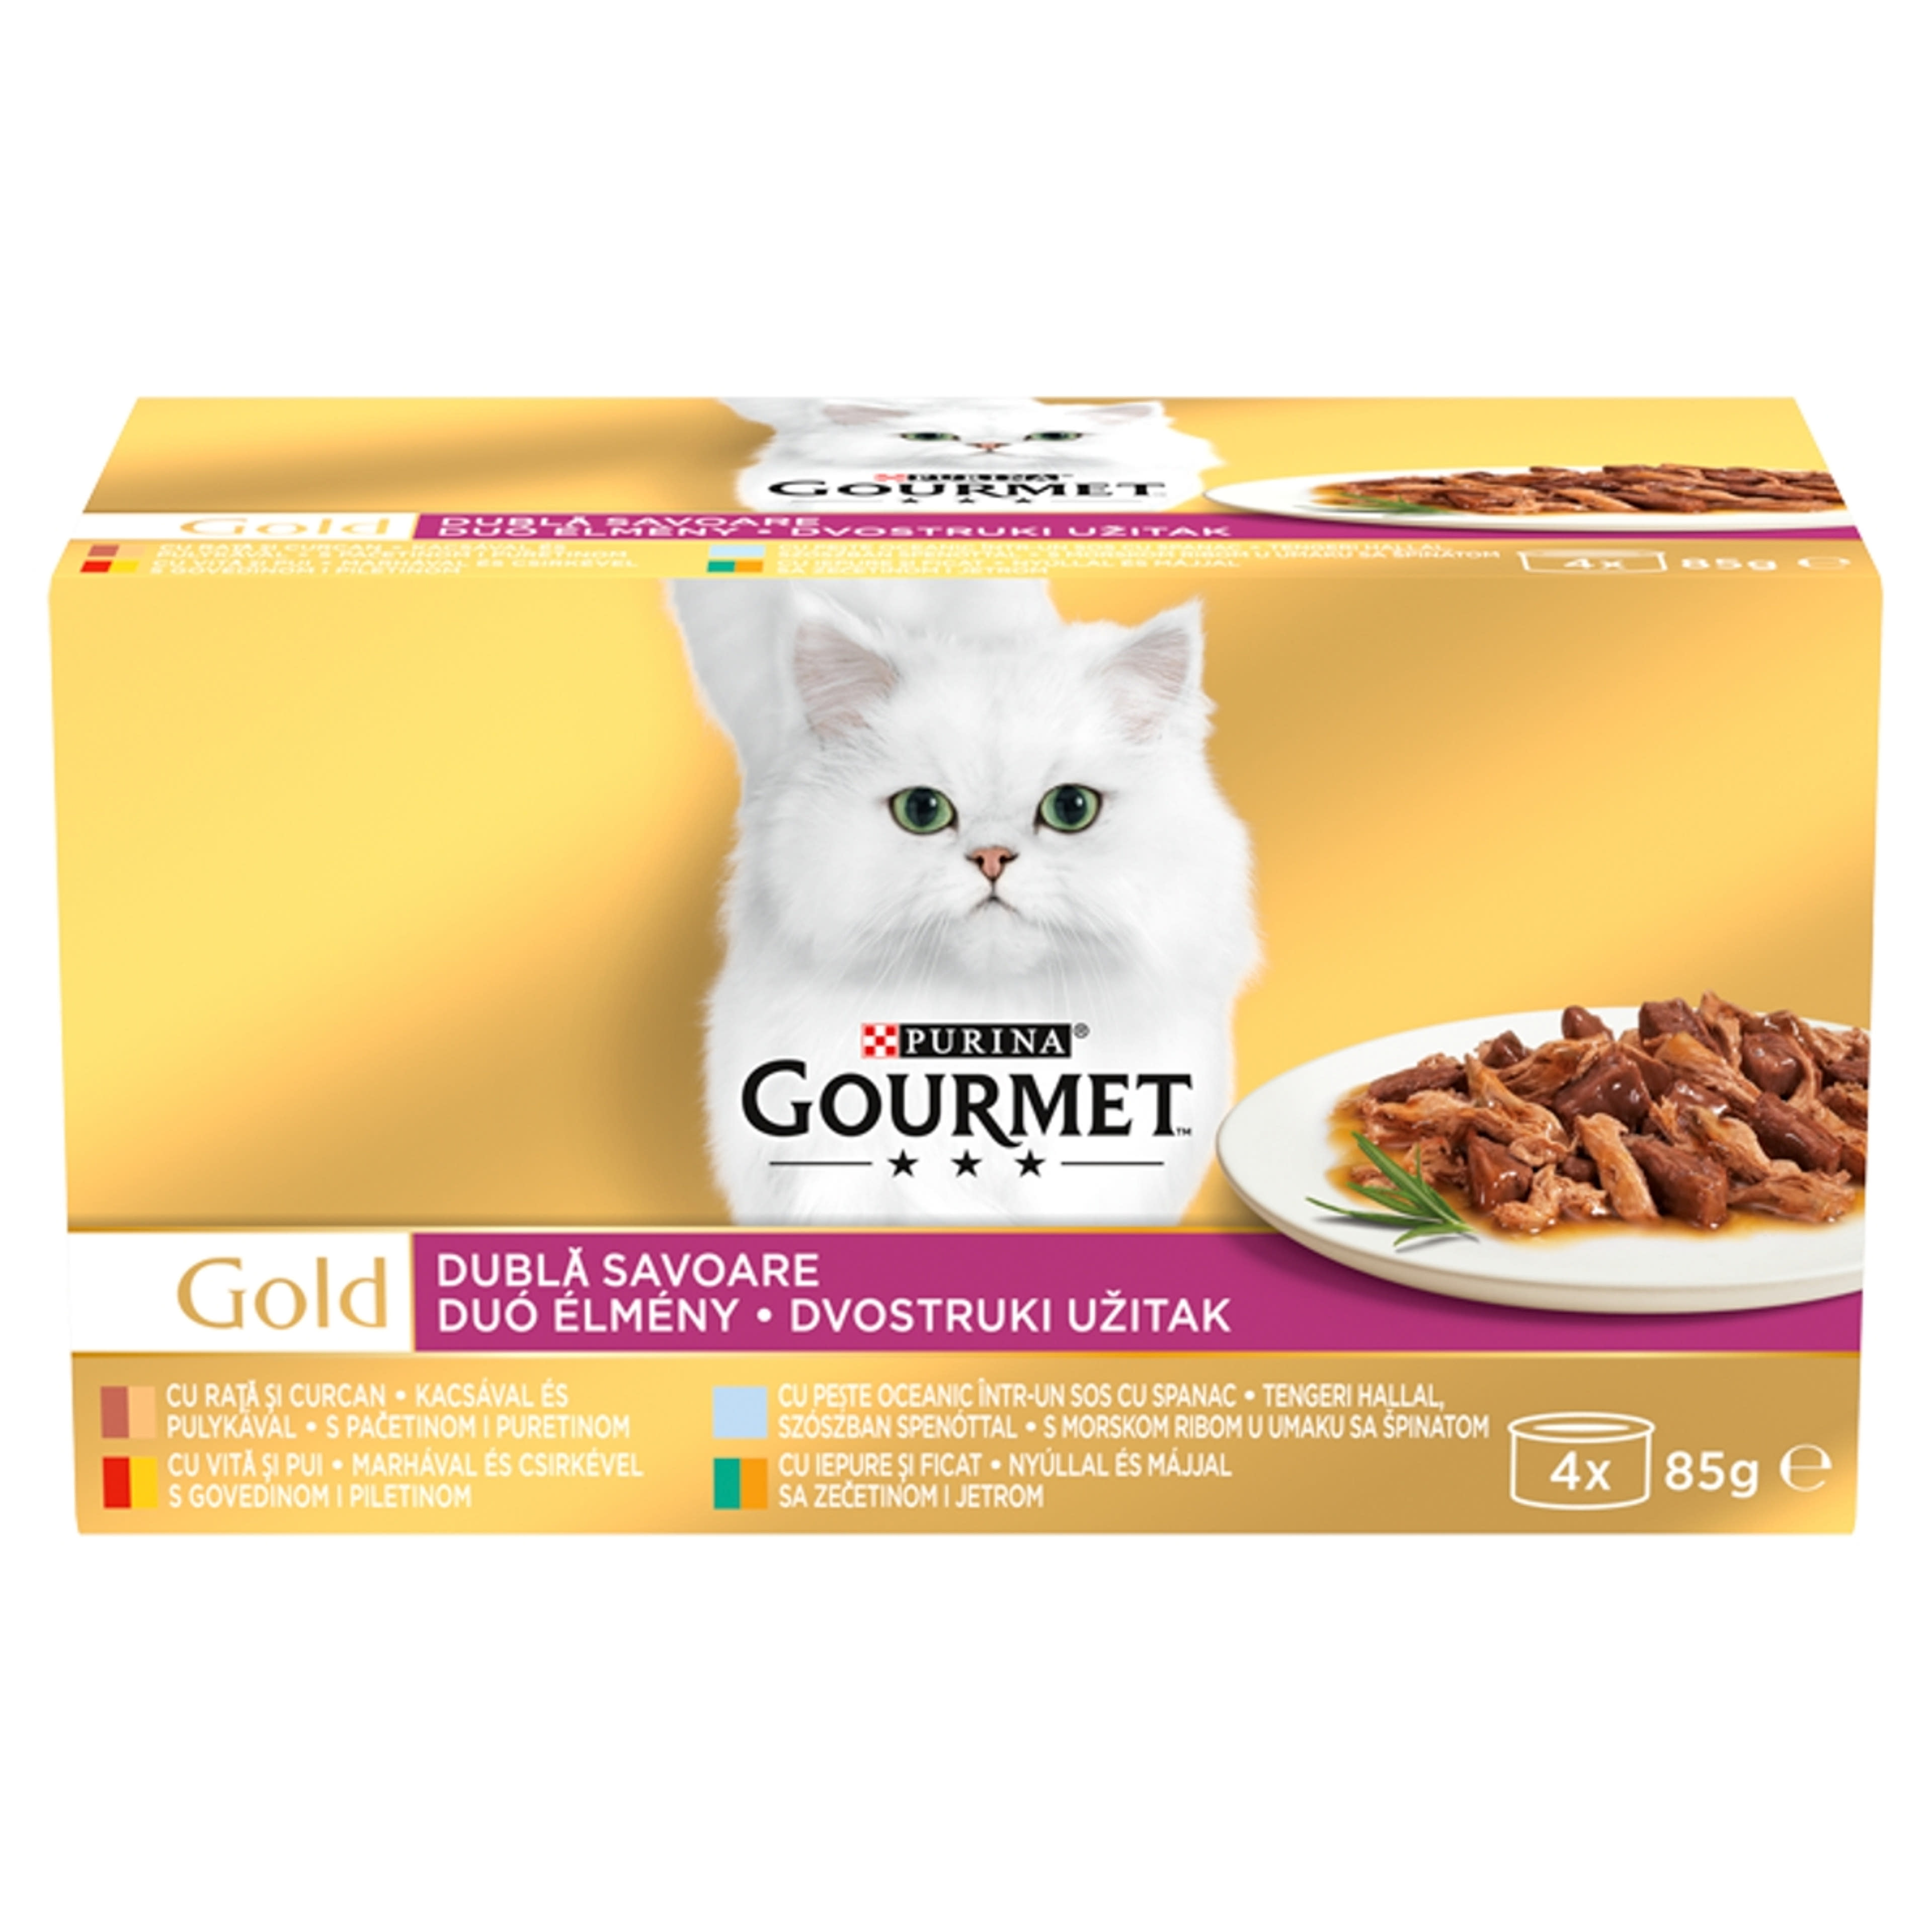 Gourmet Gold Duo Élmény felnőtt teljes értékű konzerv macskáknak, 4 ízben (4x85 g) - 340 g